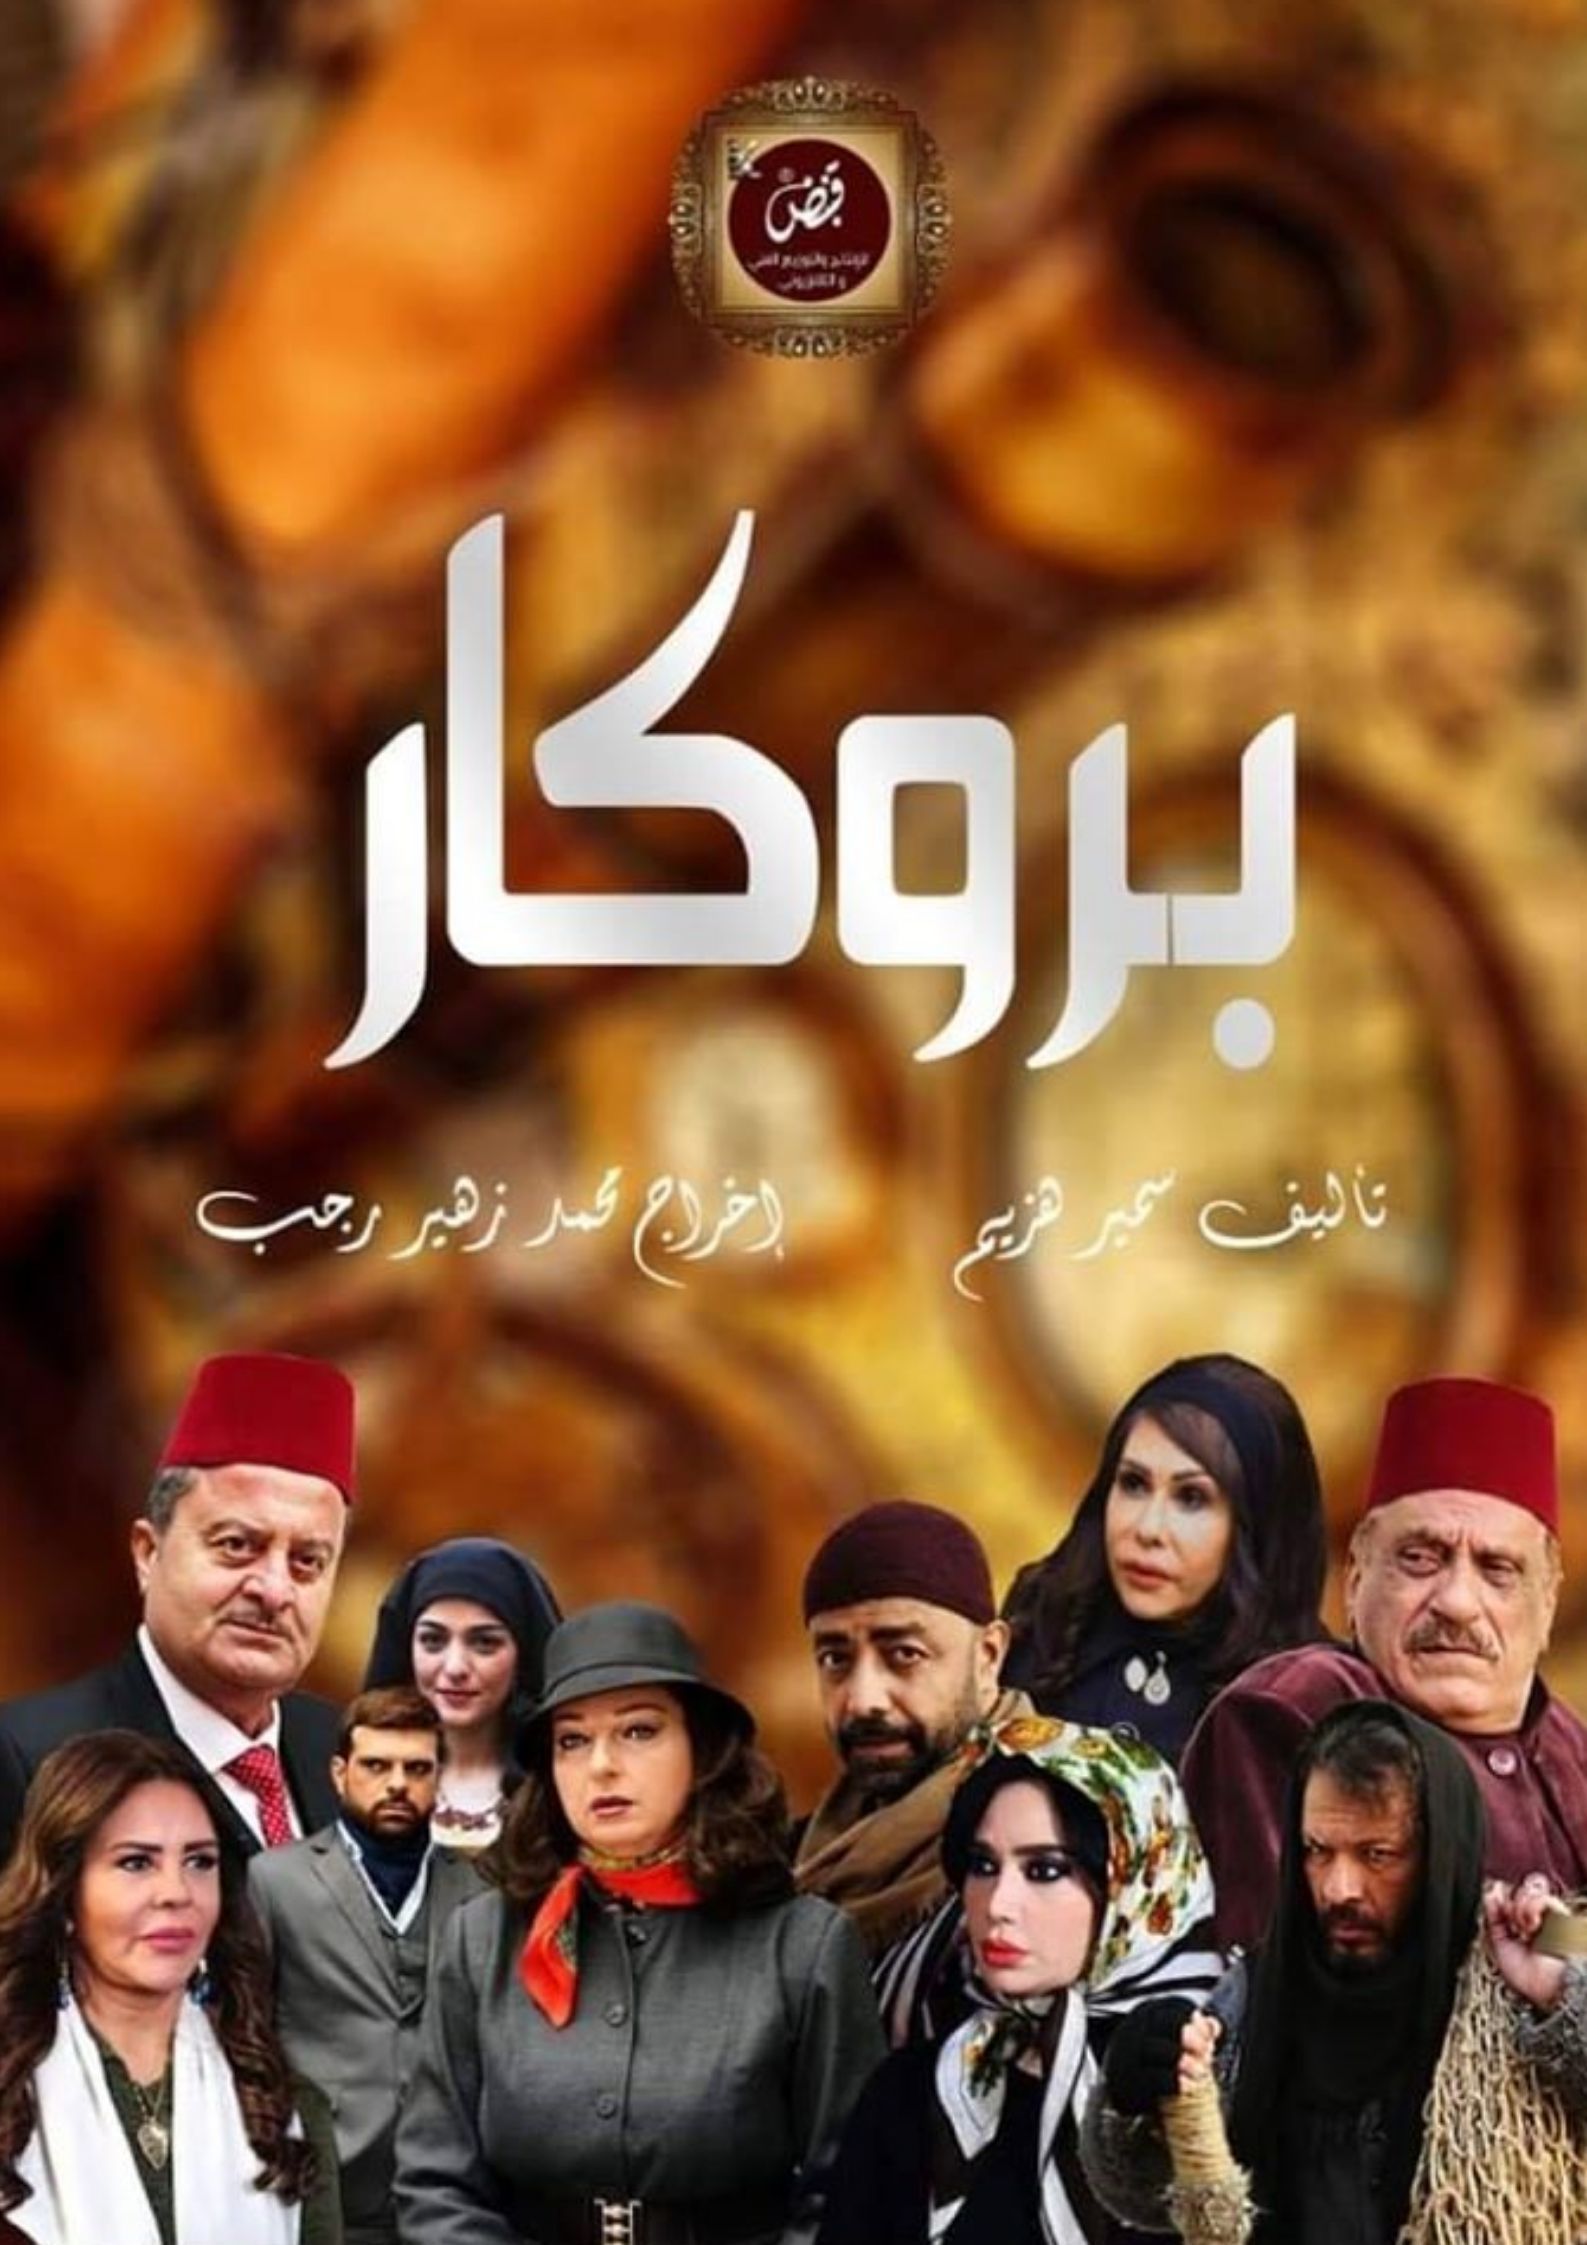 موعد وتوقيت مسلسل بروكار على قناة سوريا دراما 2020 بعد رمضان